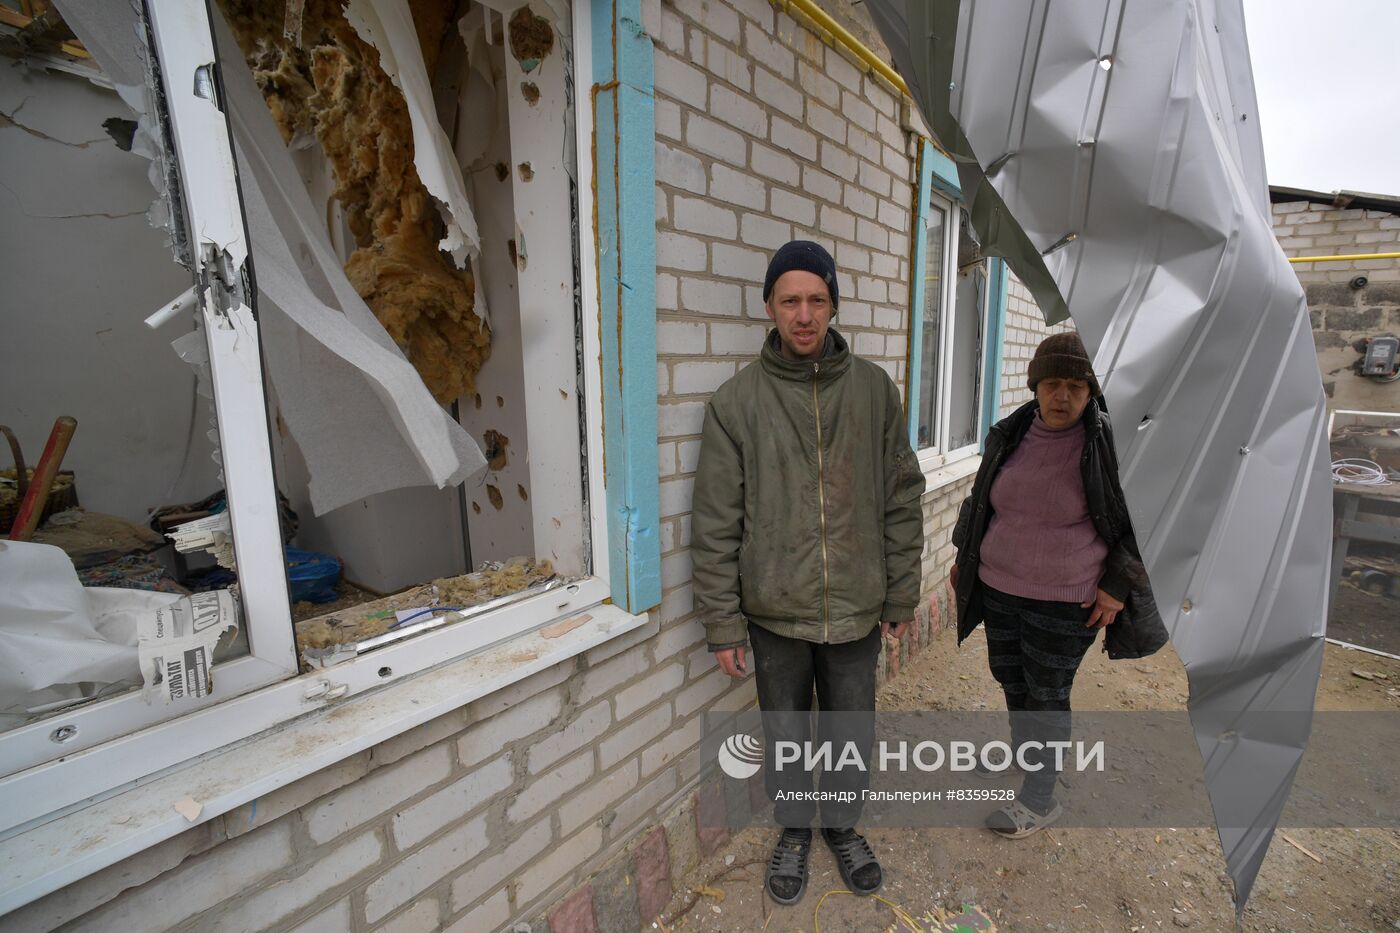 Разрушения в городе Васильевка в Запорожской области